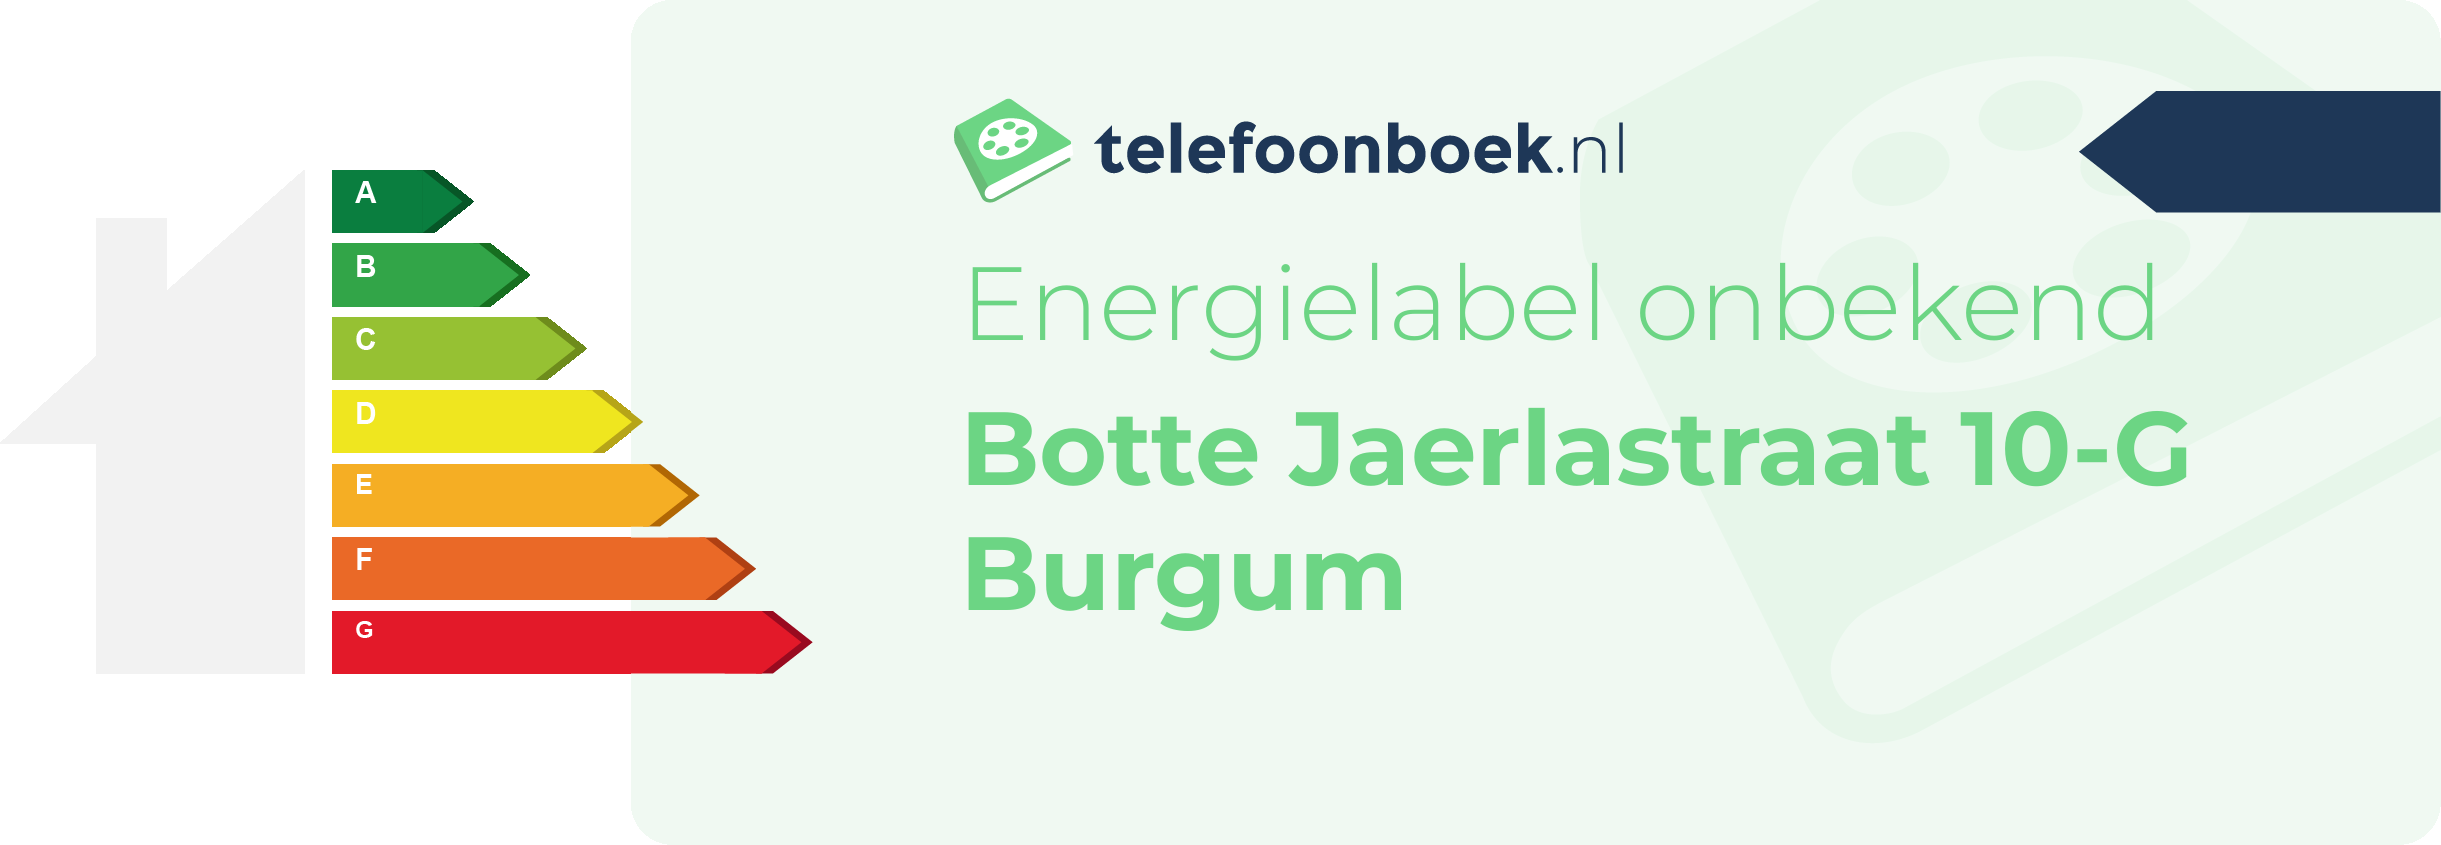 Energielabel Botte Jaerlastraat 10-G Burgum